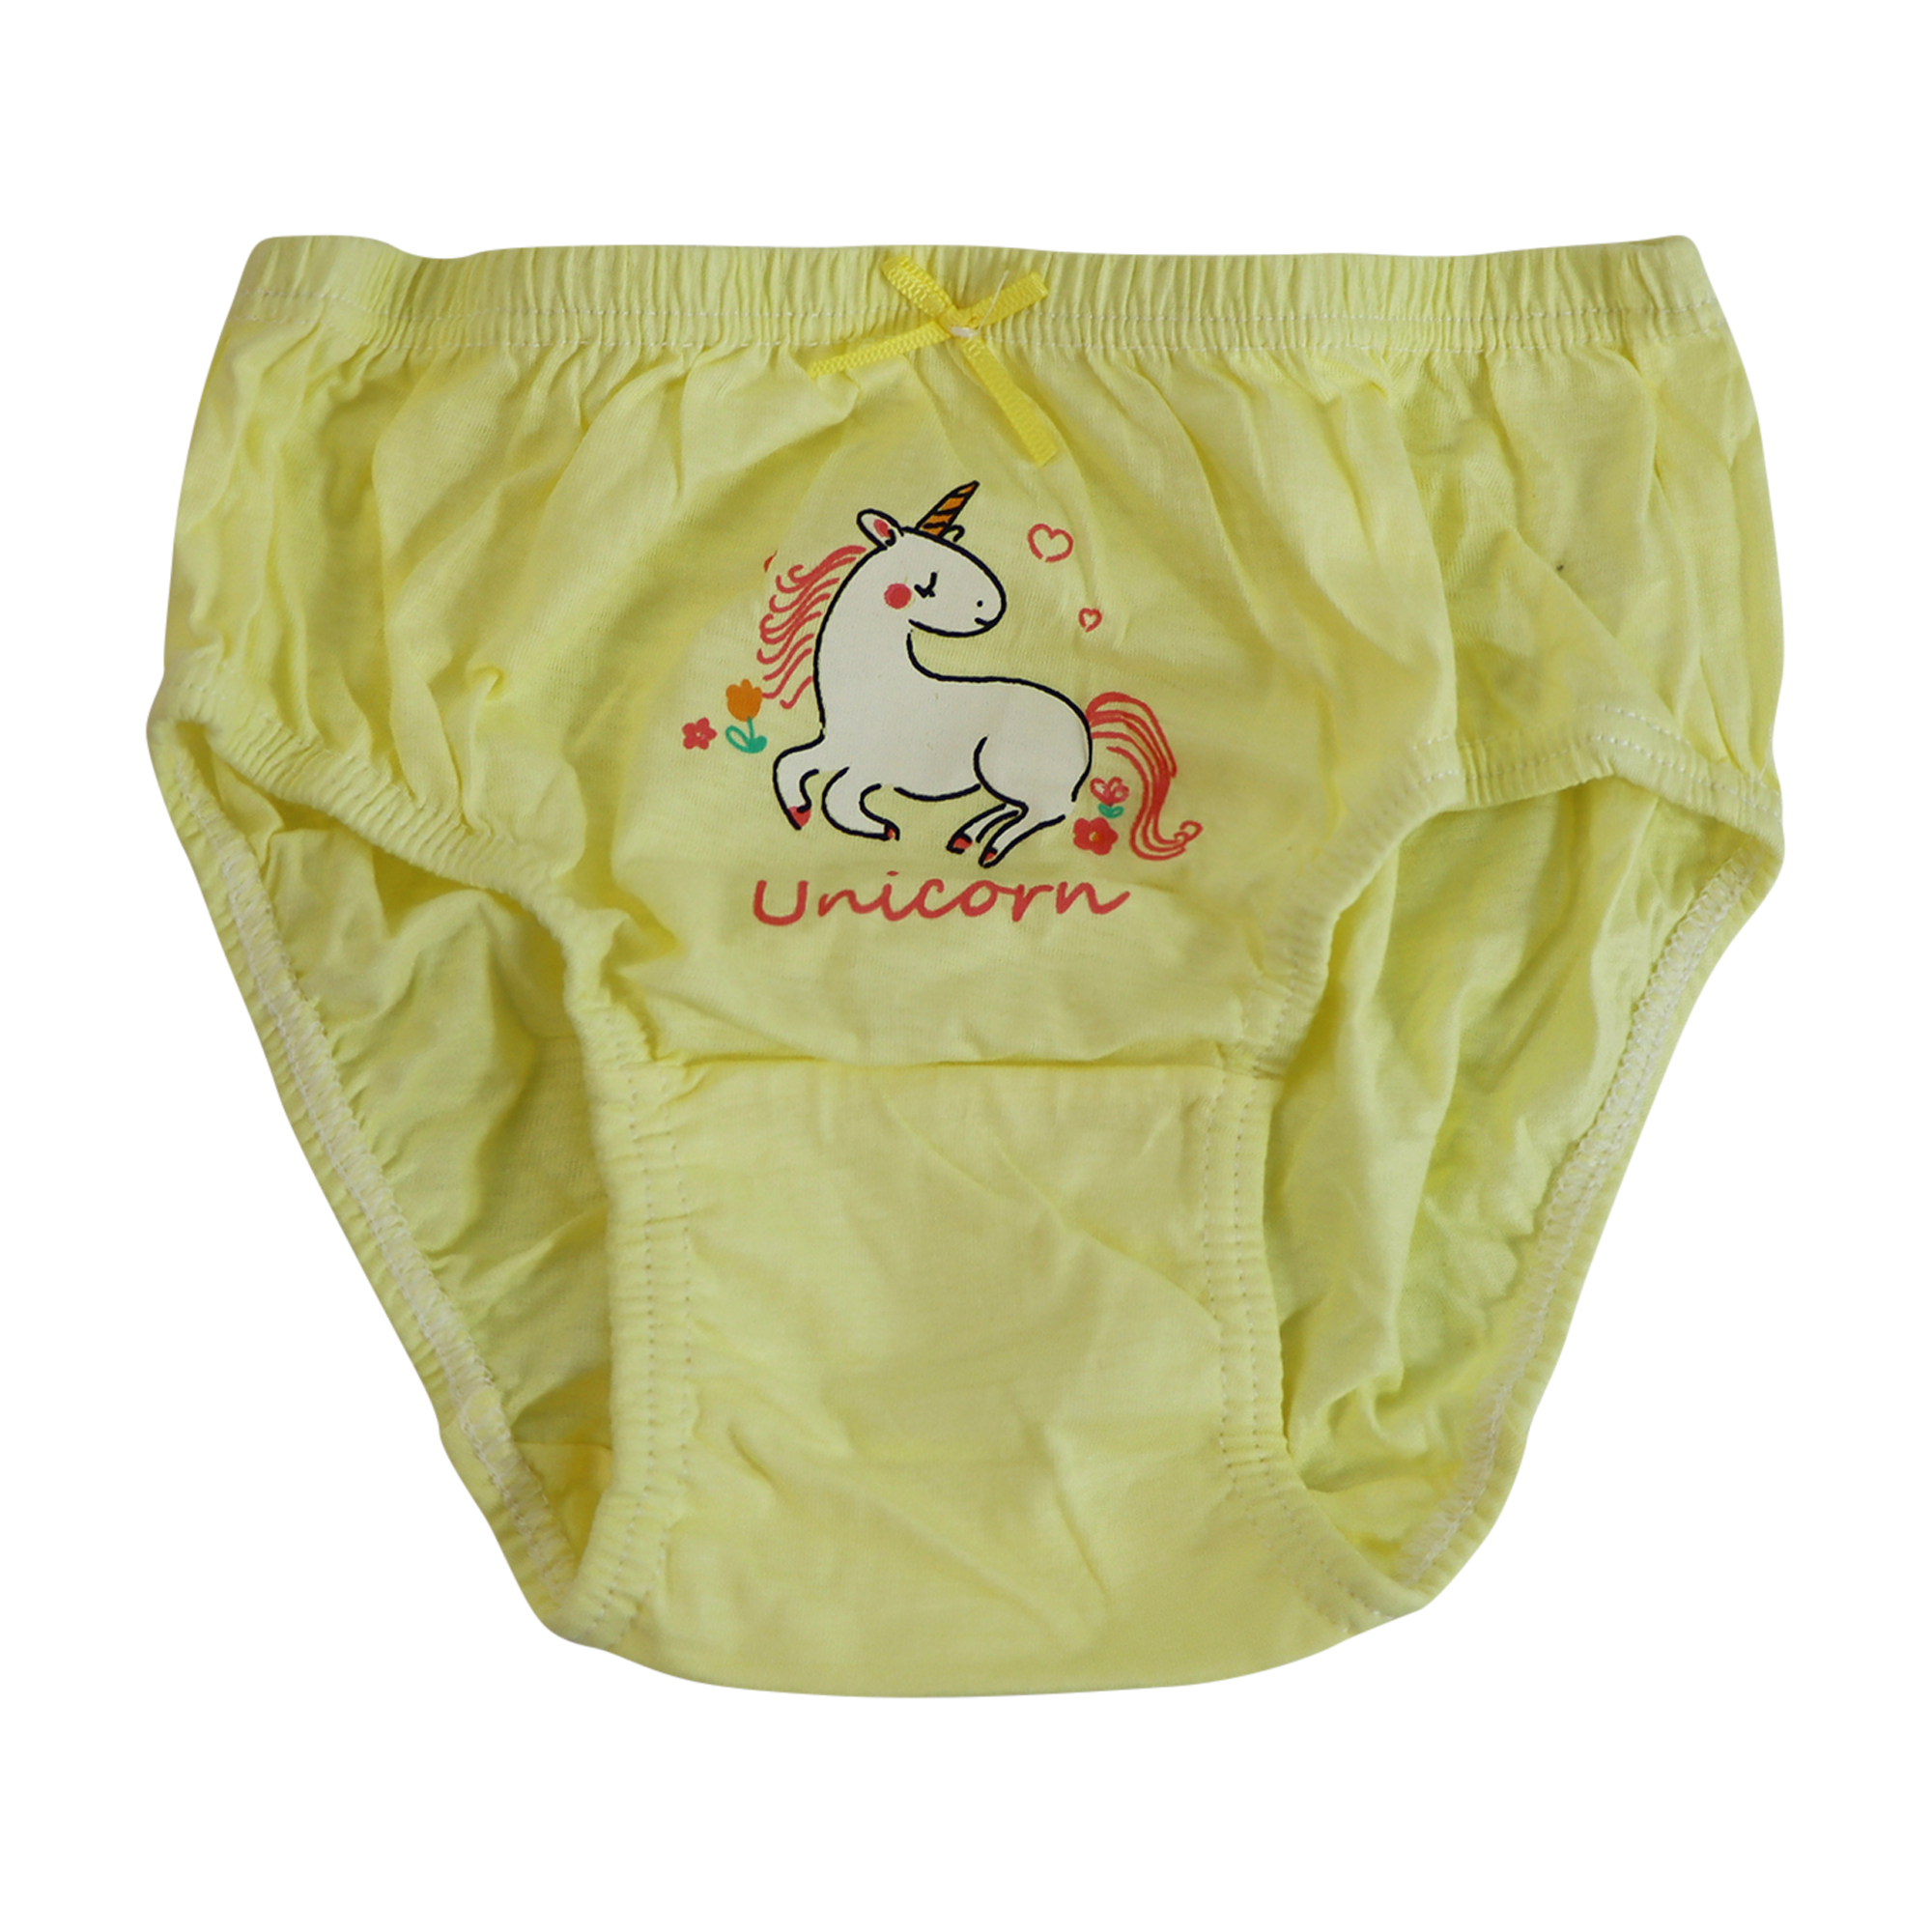 Premium Unicorn Girls Underwear 100% Cotton 5 Pack Size 3-7 Years